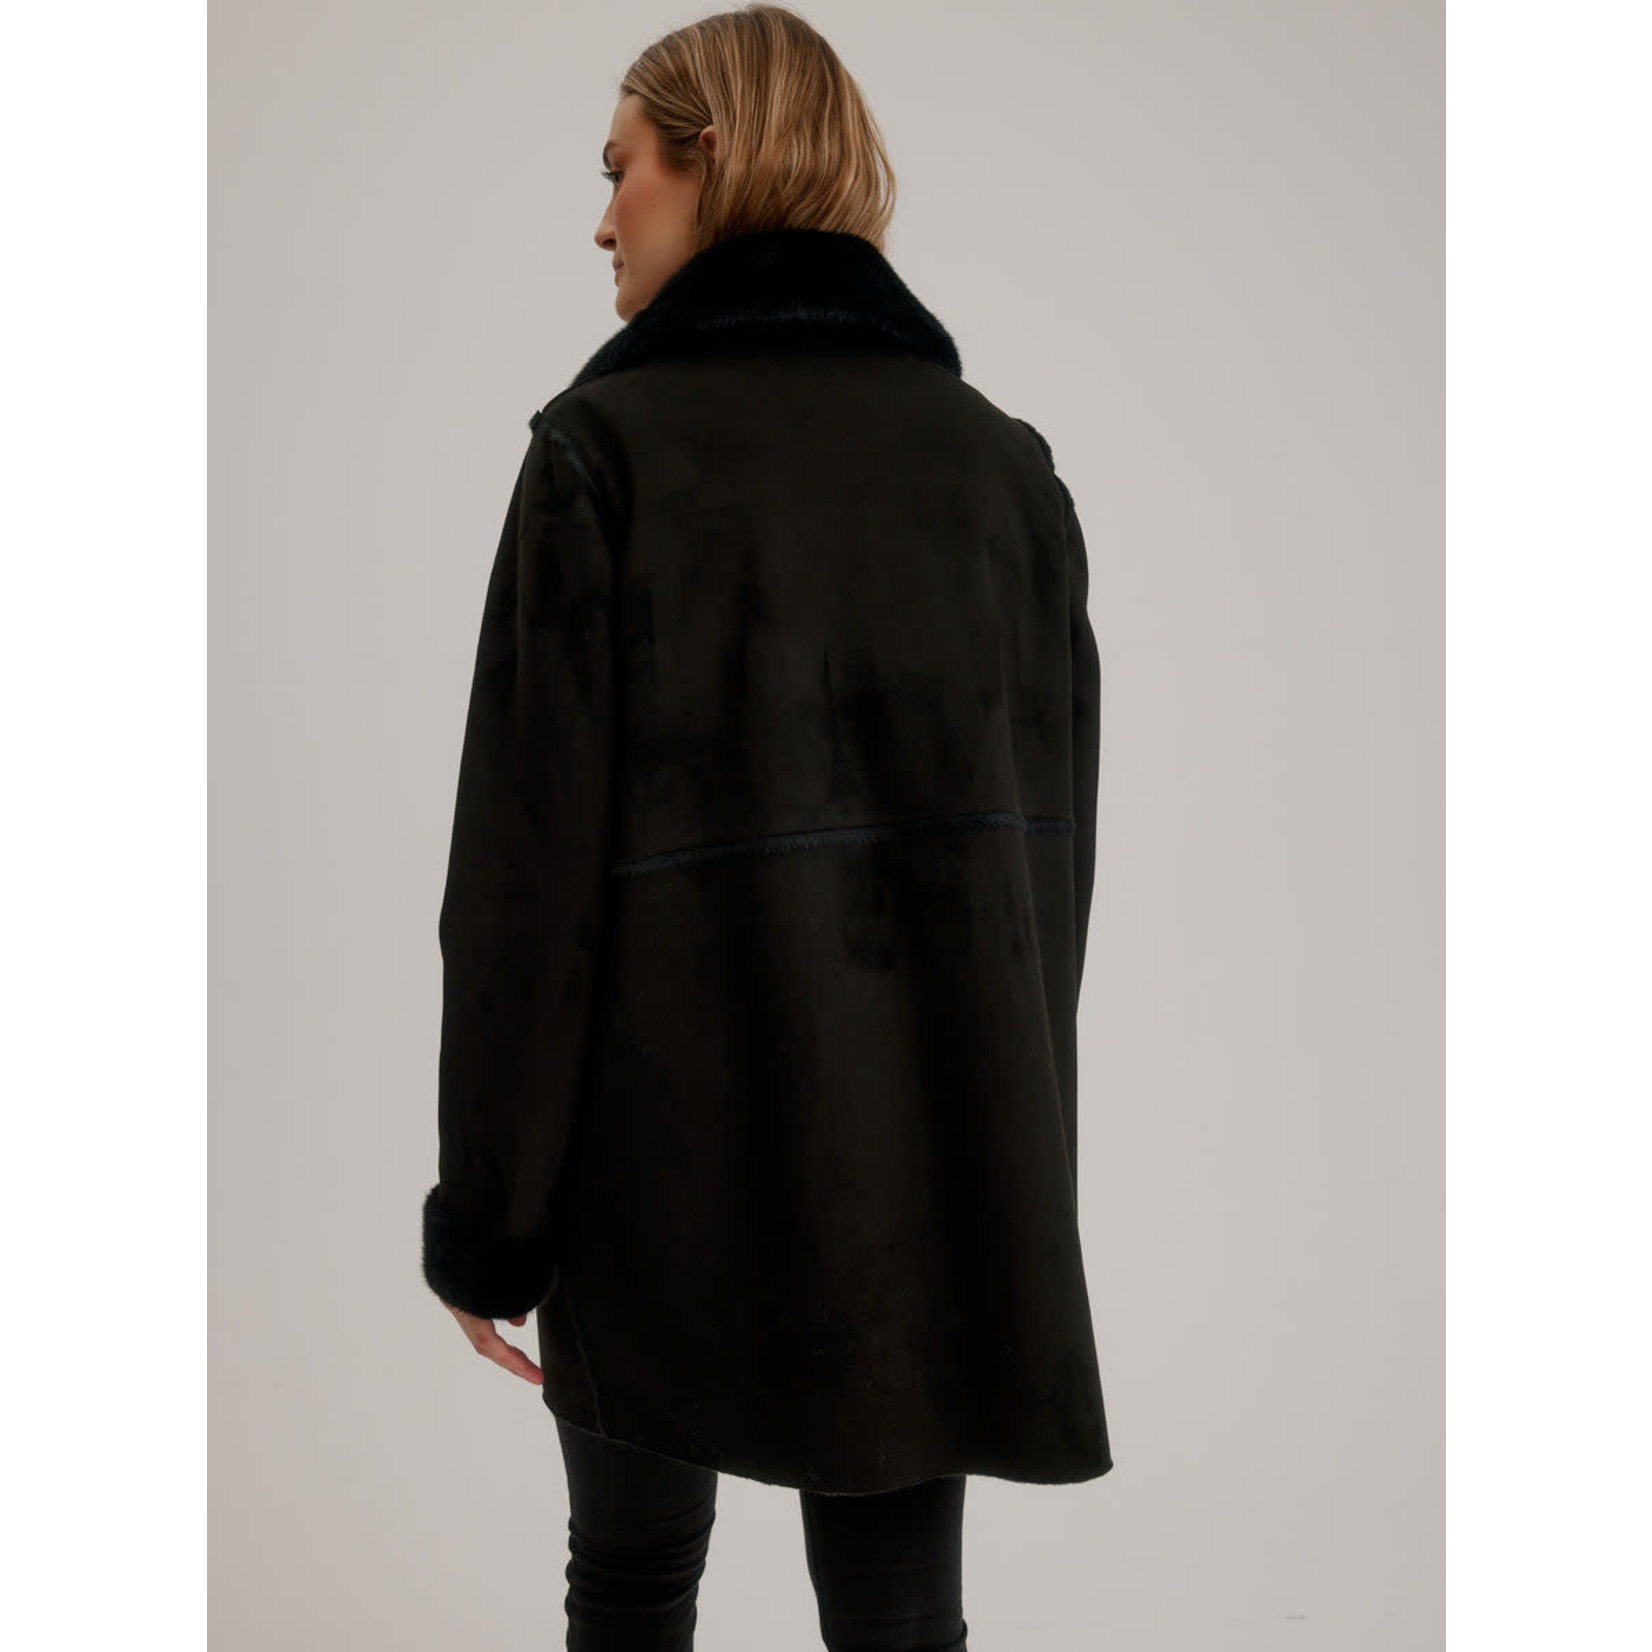 Nikki Jones Reversible Faux Shearling  Kendall Coat in Black